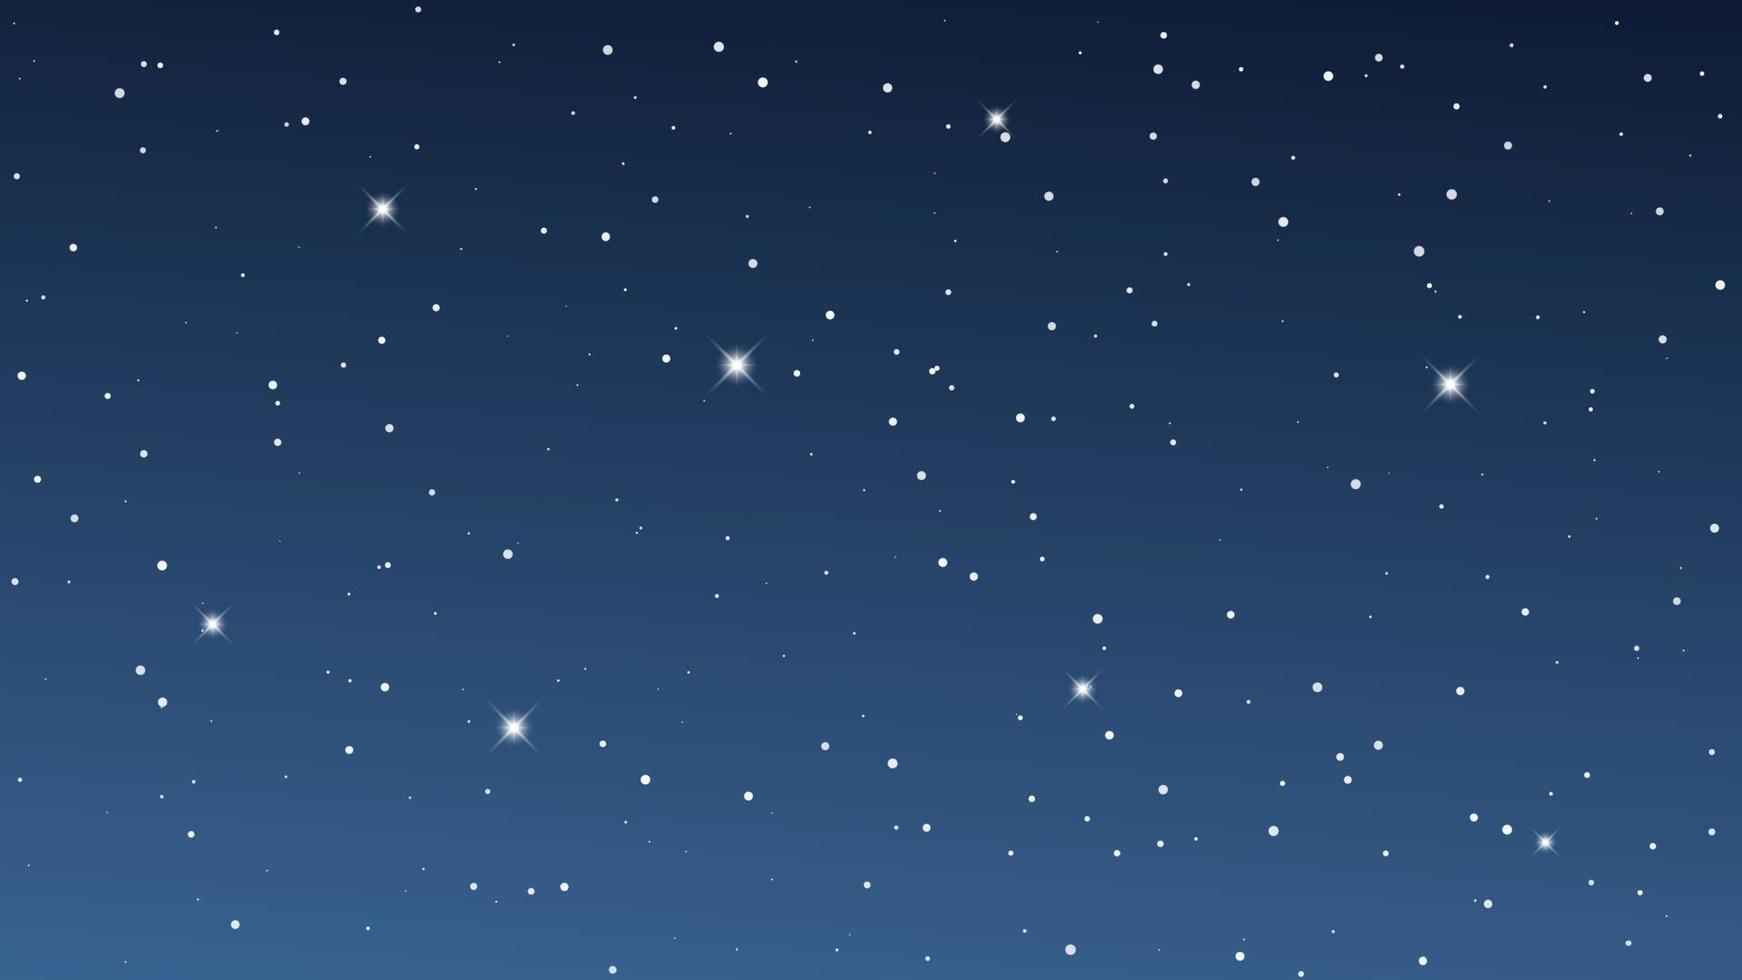 ciel nocturne avec de nombreuses étoiles. fond de nature abstraite avec poussière d'étoiles dans l'univers profond. illustration vectorielle. vecteur